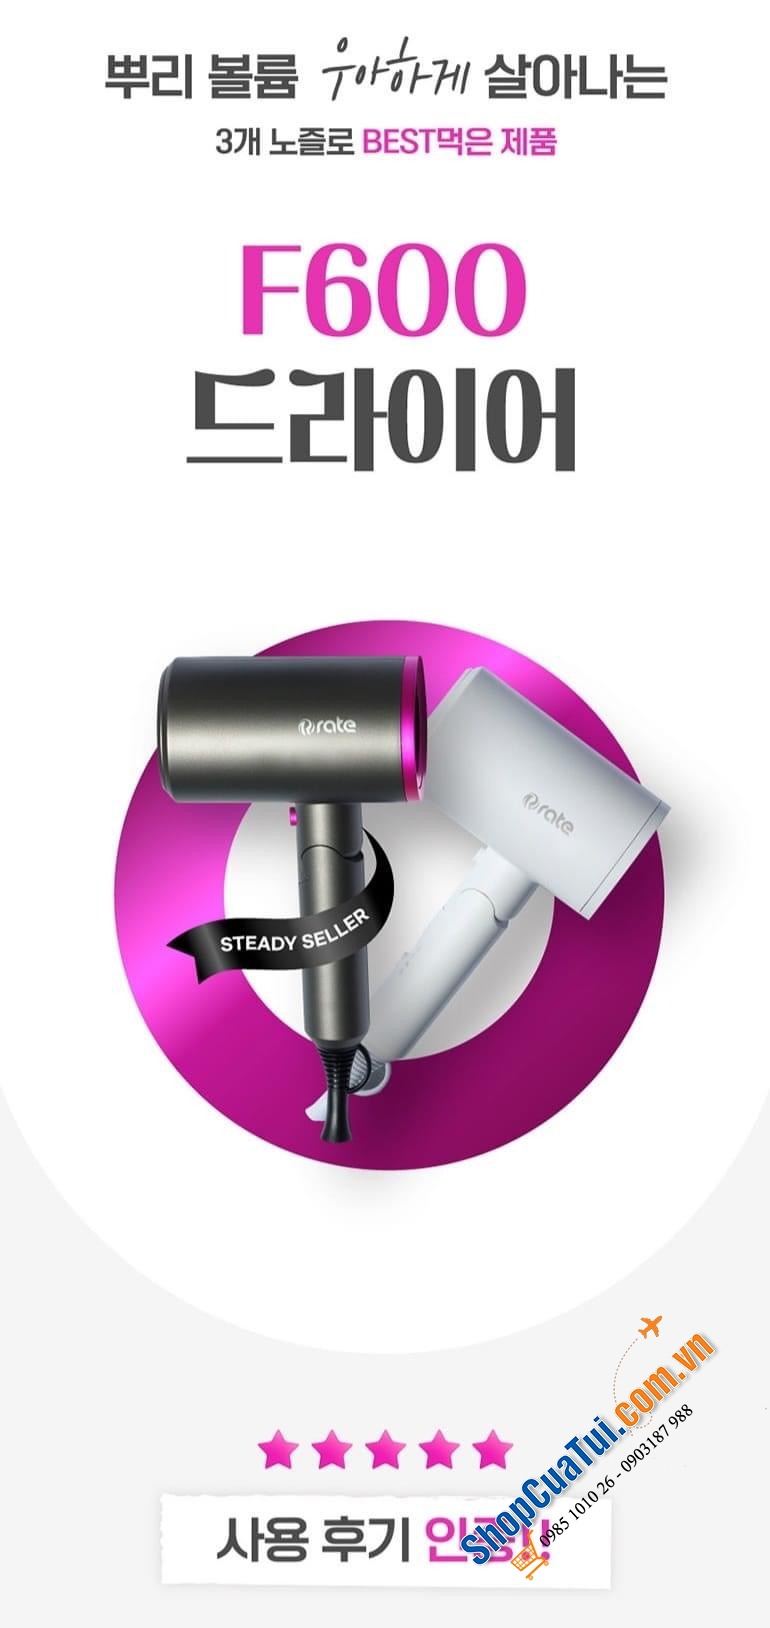 MÁY SẤY TÓC SÓNG ÂM RATE F600 của Hàn Quốc - Máy sấy tóc thế hệ mới công nghệ ion sóng âm, công suất 1.300 - 1.600w với 3 mức nhiệt: Nóng - Ấm - Lạnh